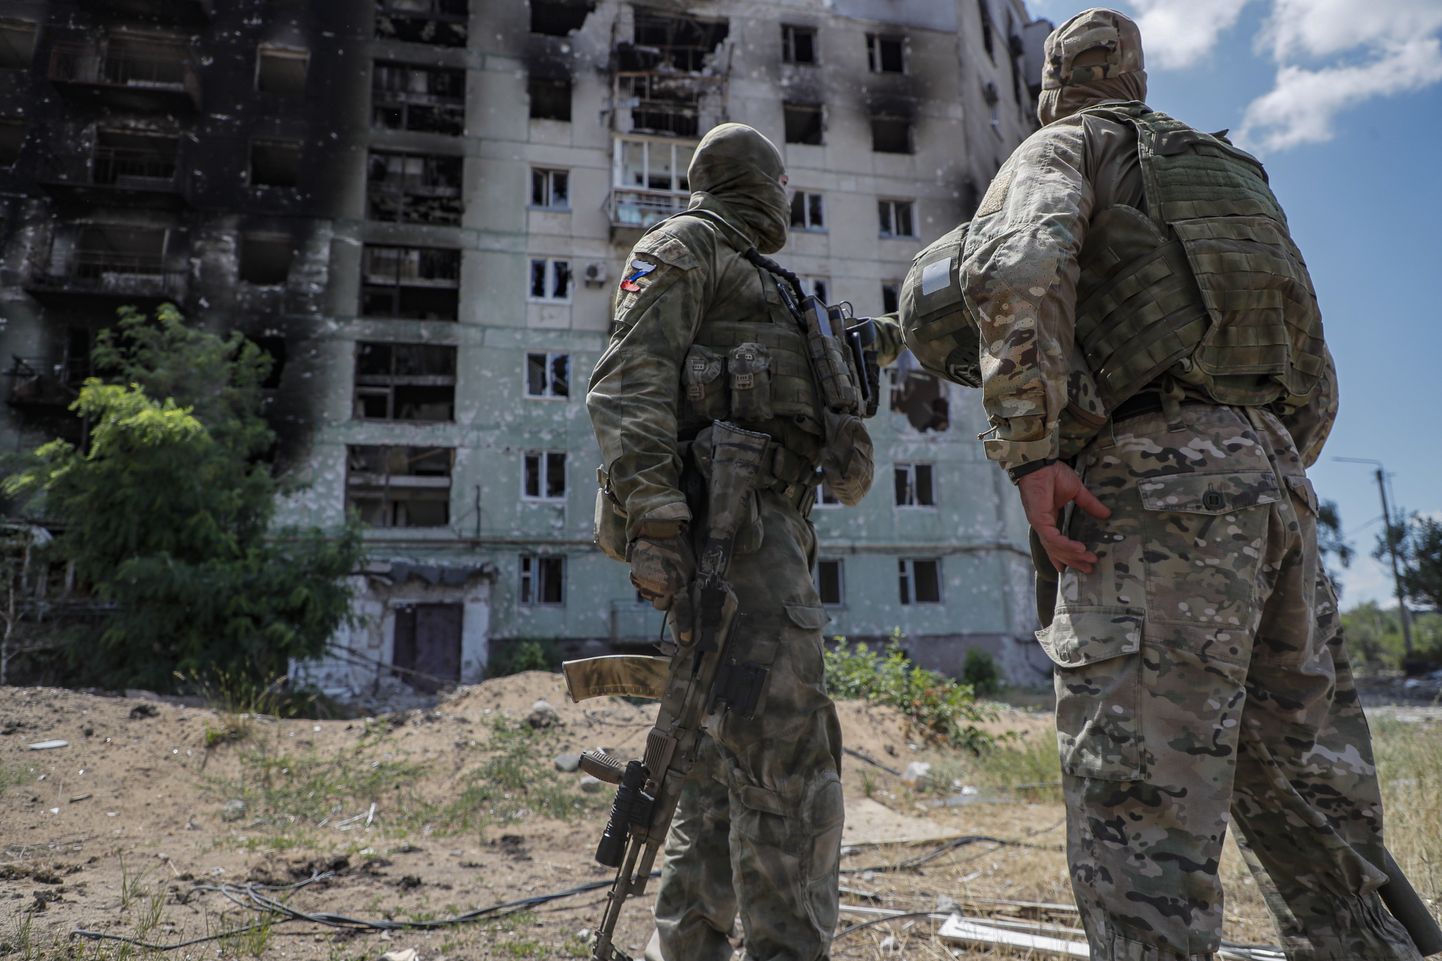 Vene sõdurid kannatada saanud korrusmaja juures juulis 2022 Ukrainas Luhanski oblastis Severodonetskis. Venemaal Neftejuganskis avati näitus asjadest, mille Vene sõdurid on Ukrainast varastanud.